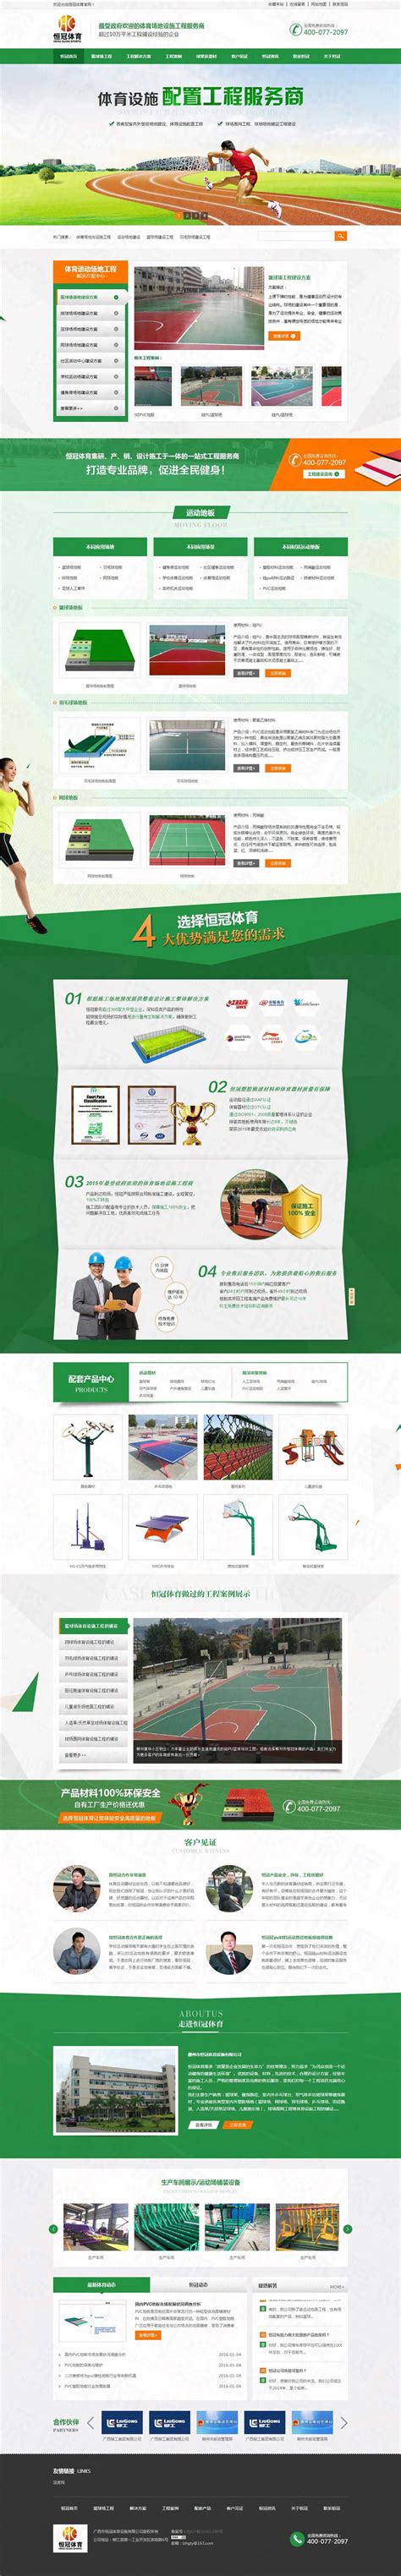 柳州市恒冠体育设施营销型网站案例|橡塑/原料/钢材|深度网